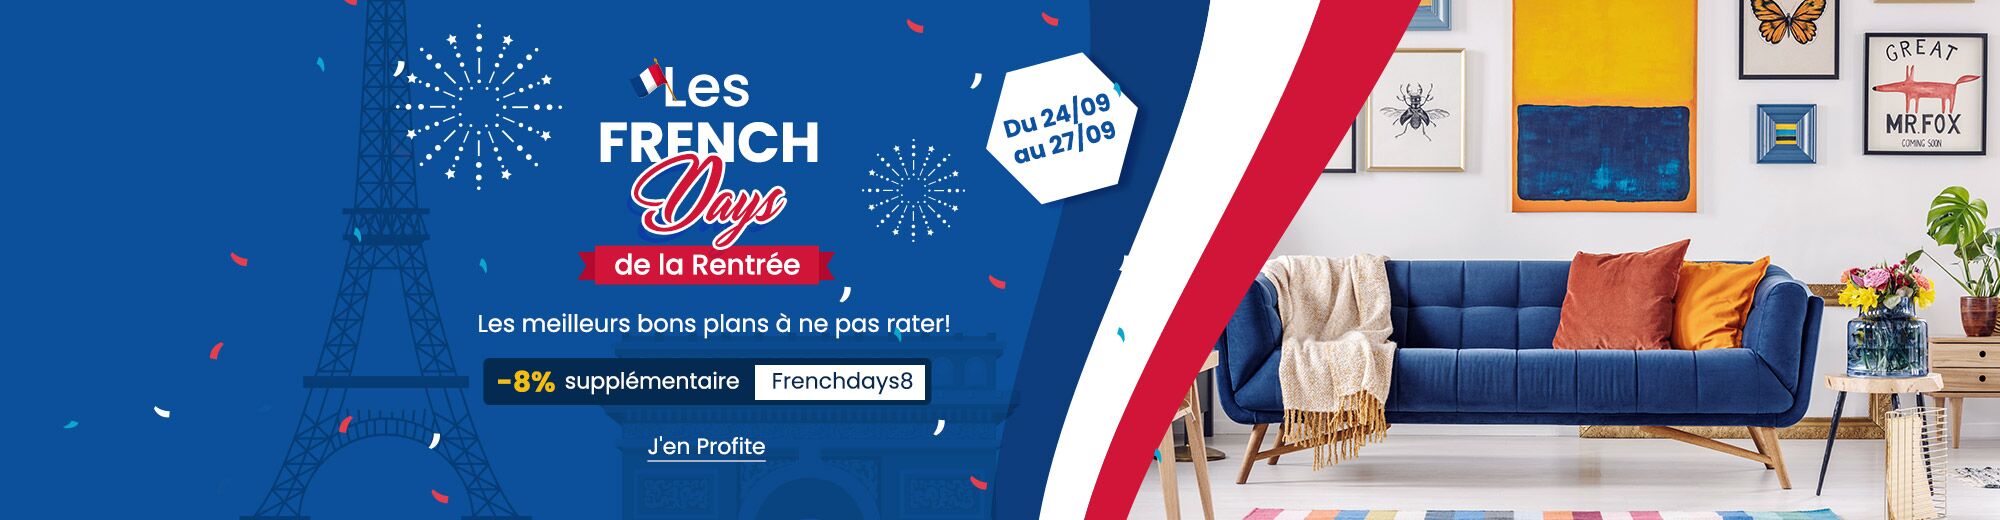 Rattrapez-vous avec les French Days de la rentrée chez Costway! Découvrez tous les bons plans et profitez d'une livraison gratuite sur tout le site costway.fr!